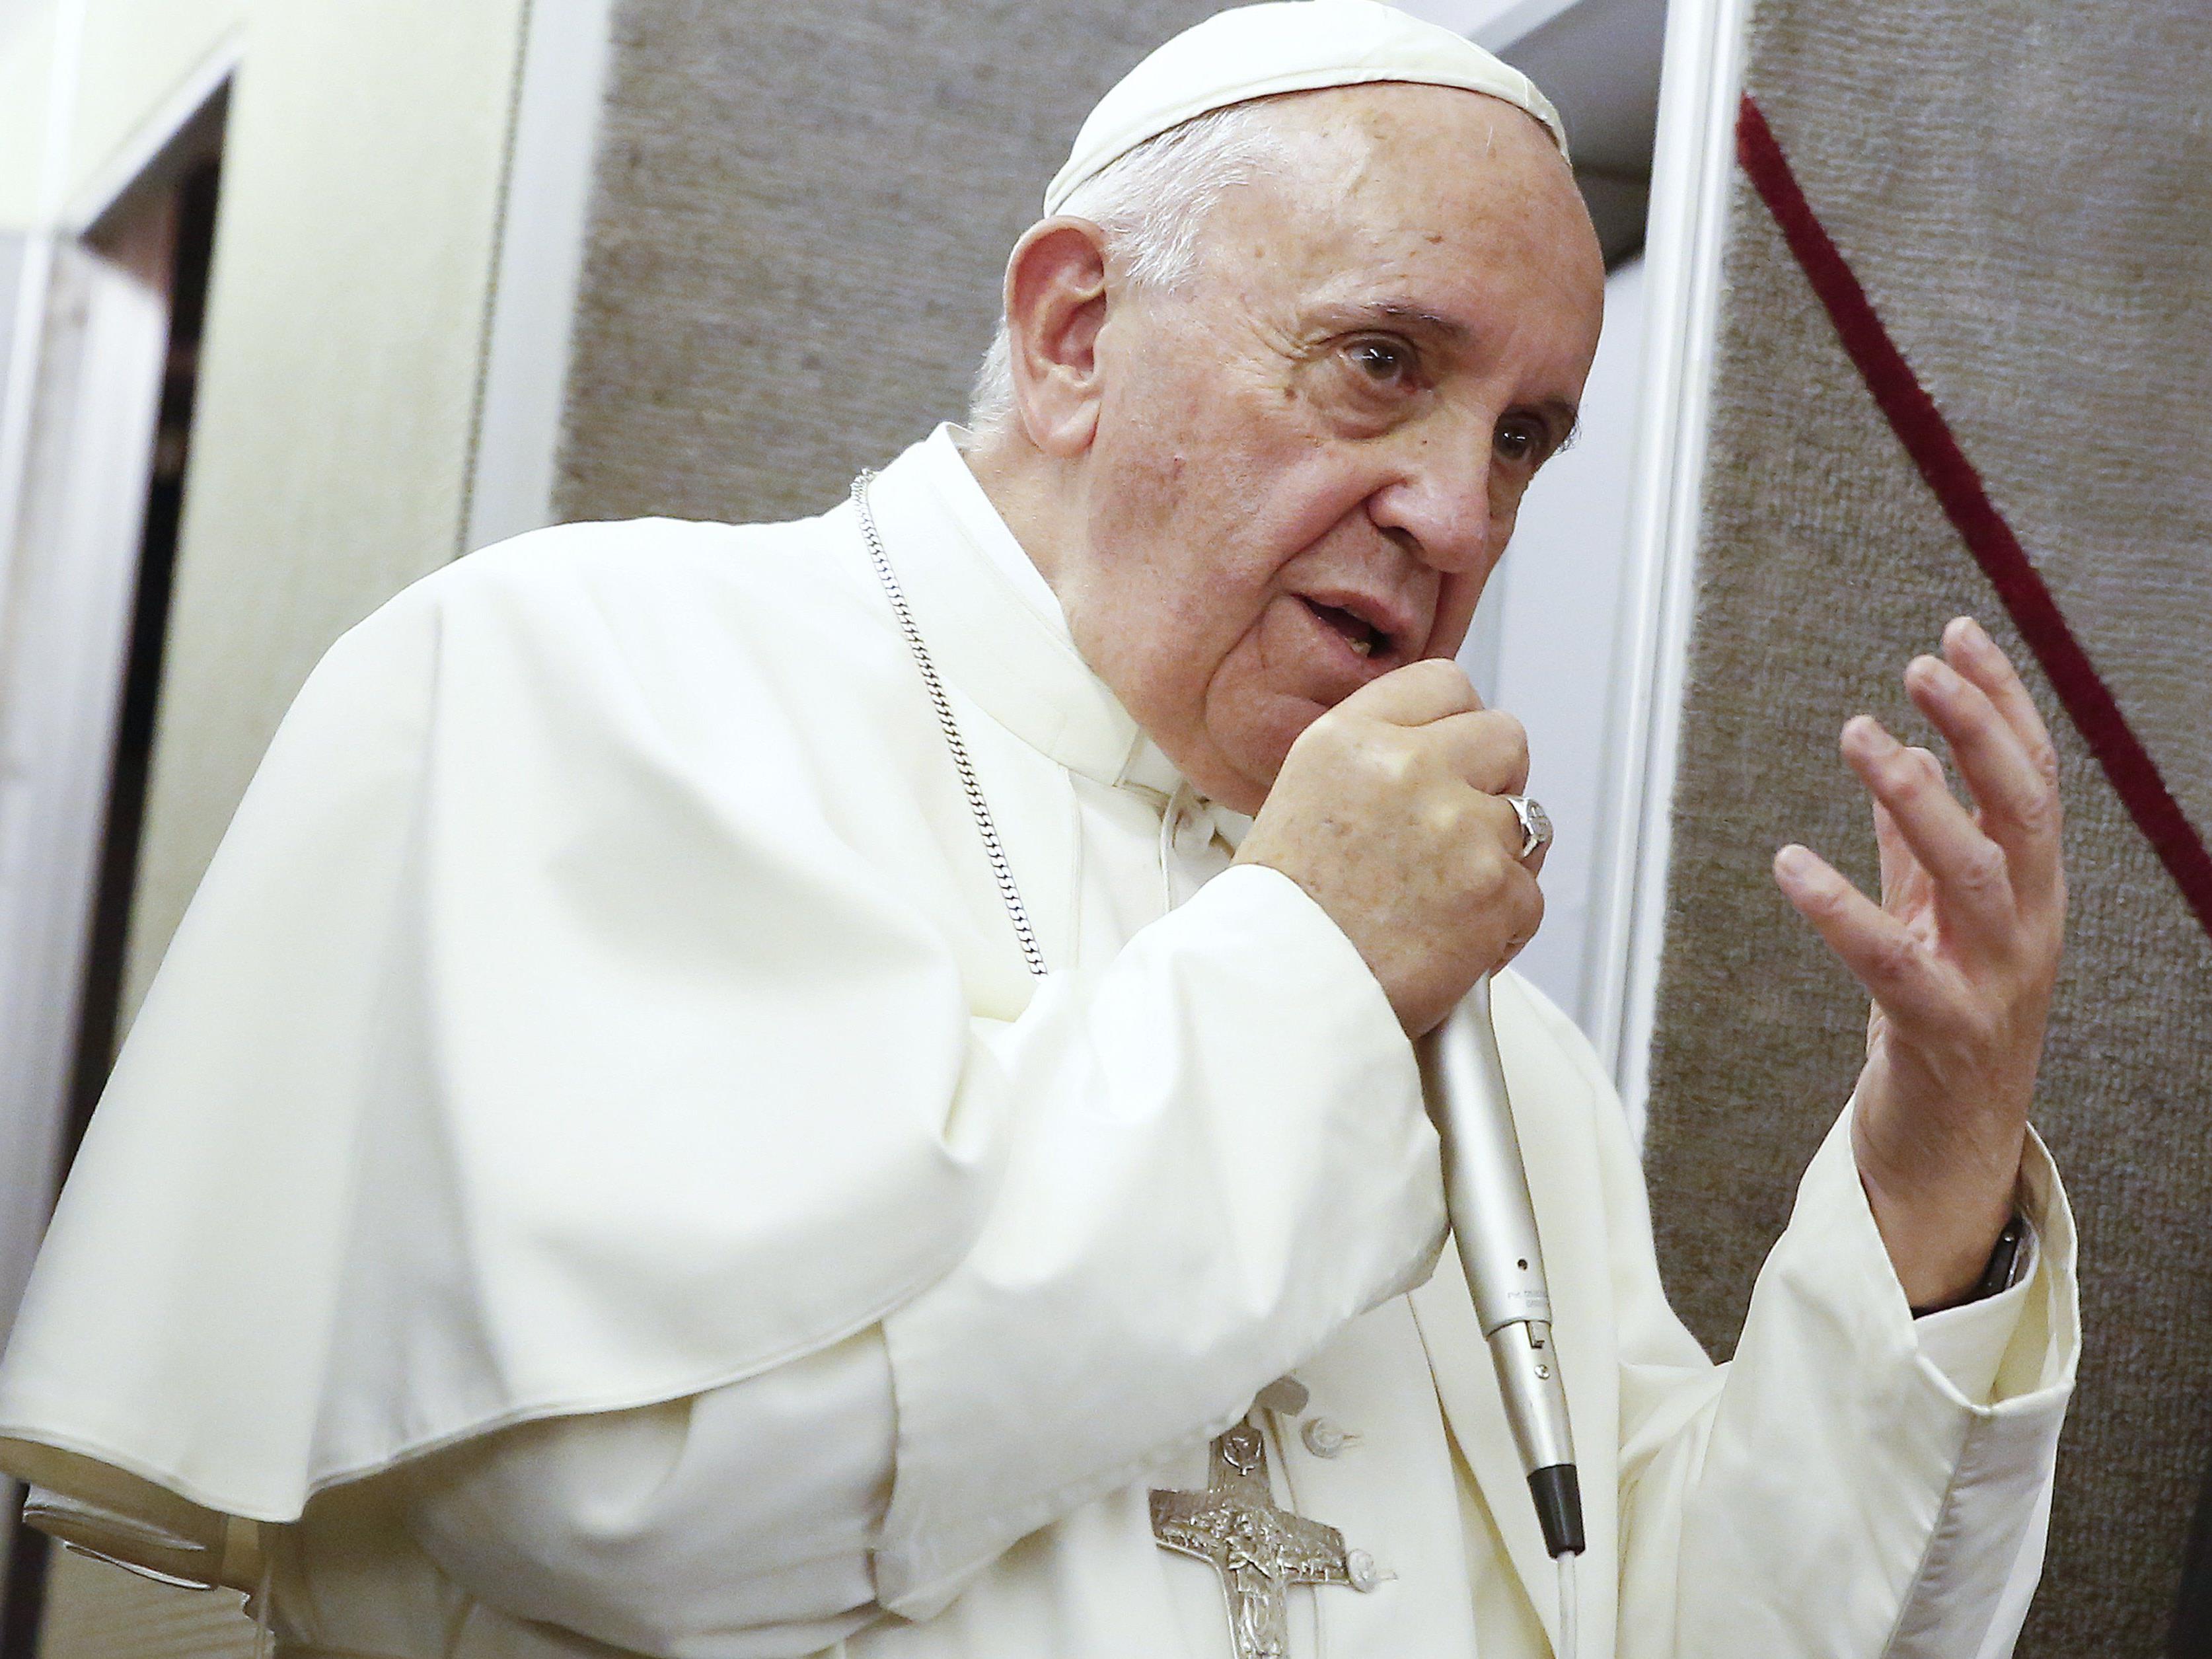 Pontifex hält Pädophilie unter Priestern für "Verrat an Berufung".